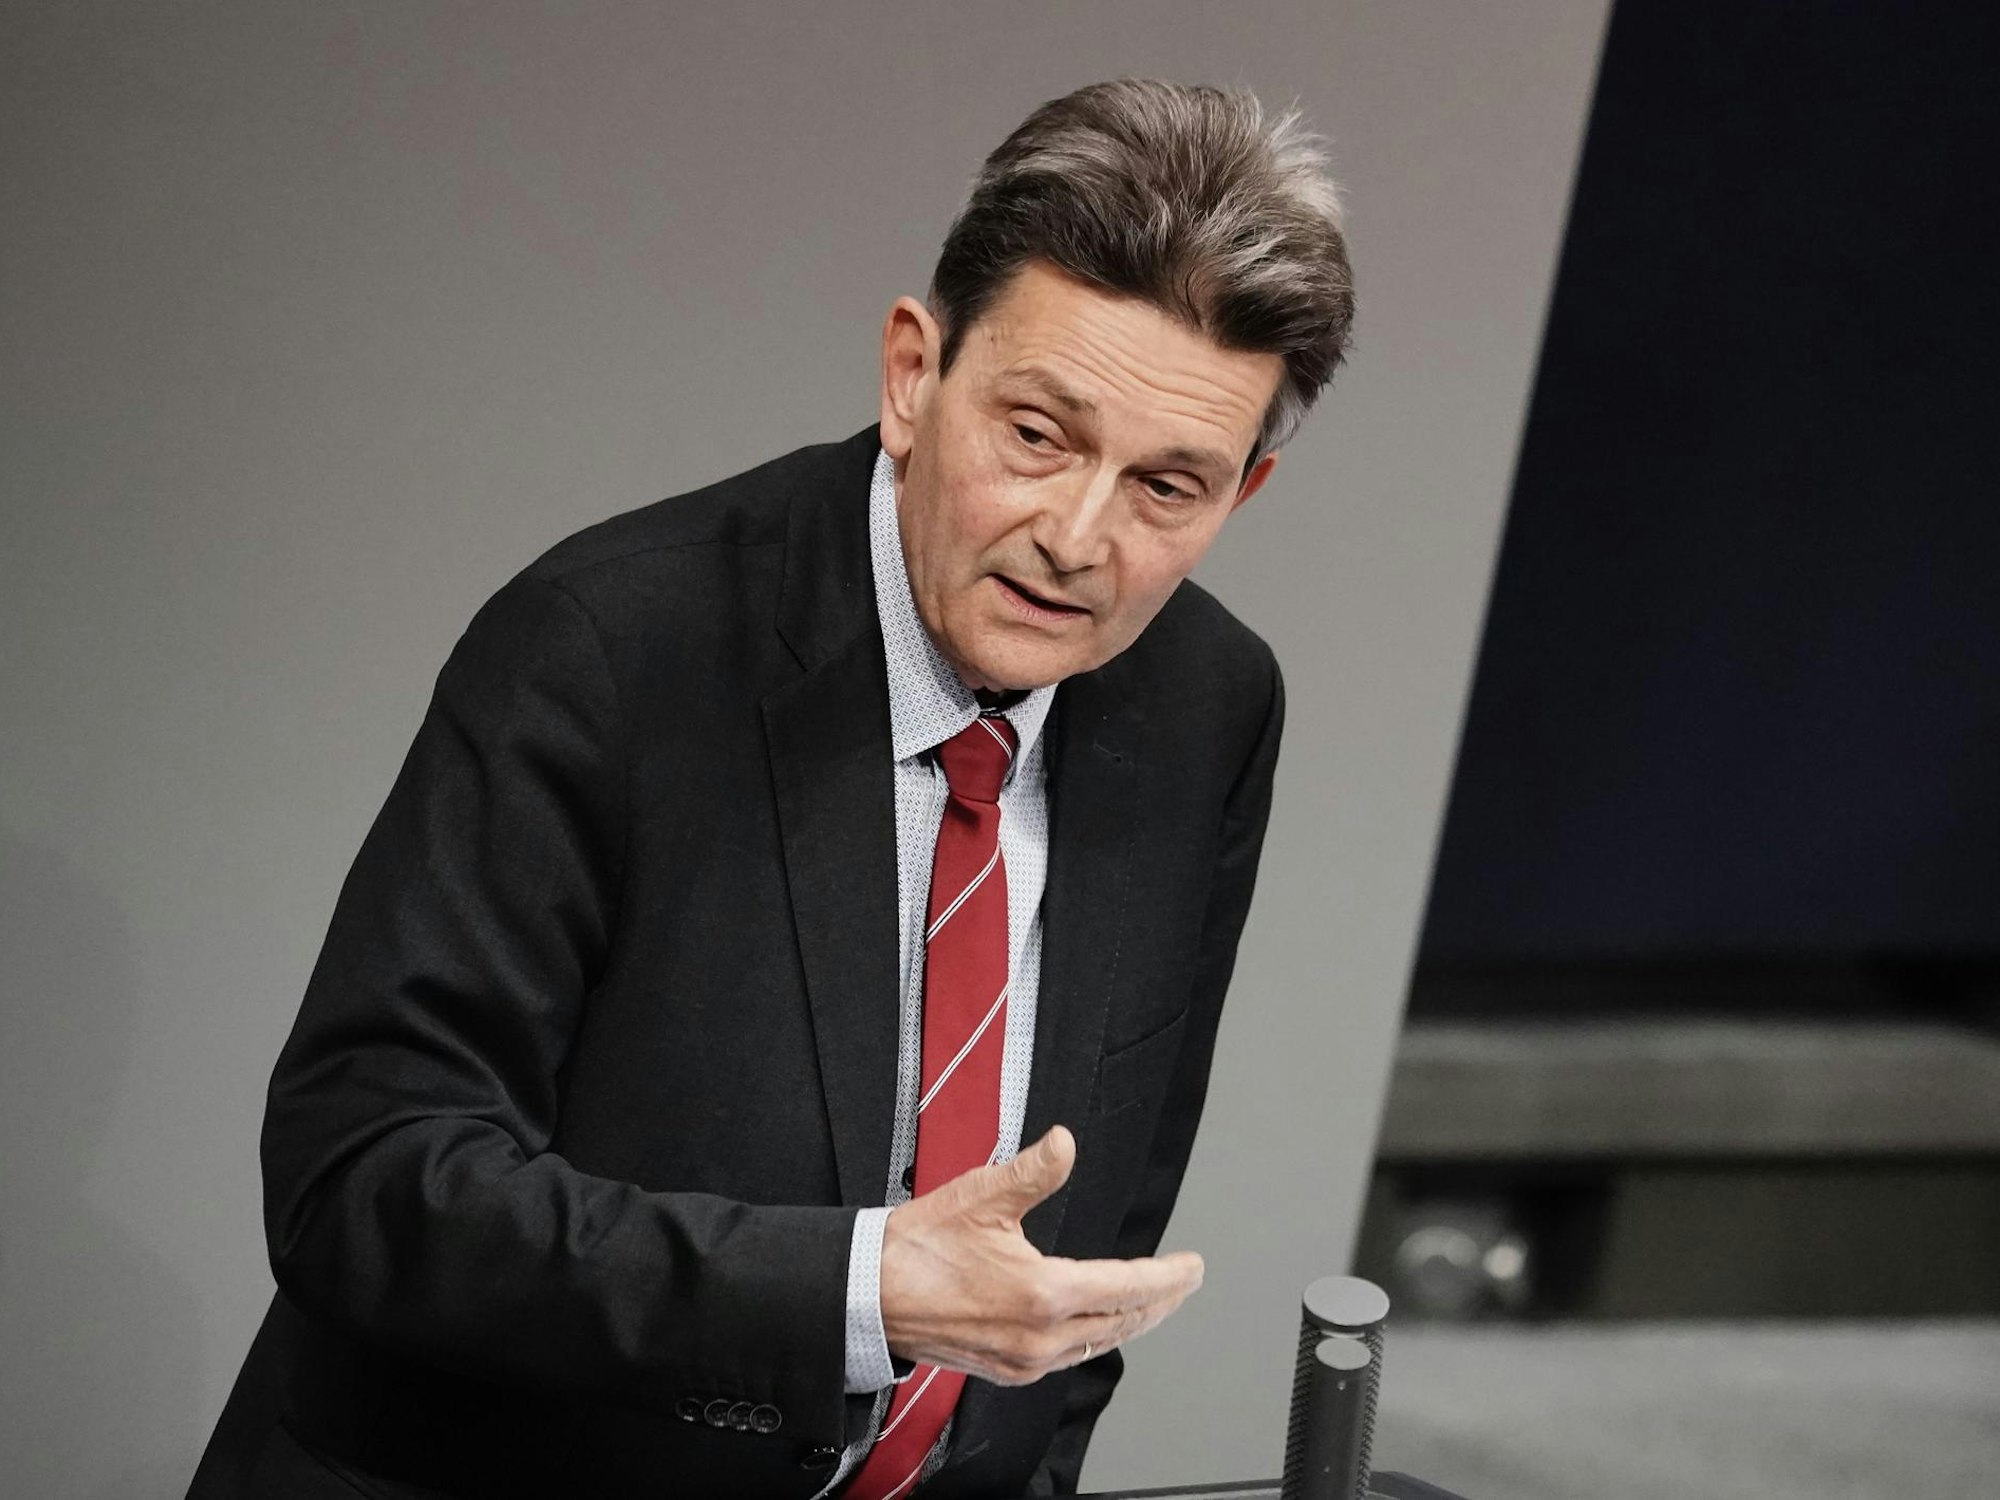 Rolf Mützenich am 26.11.2020 in Berlin im Bundestag bei Debatte zu Corona-Strategie